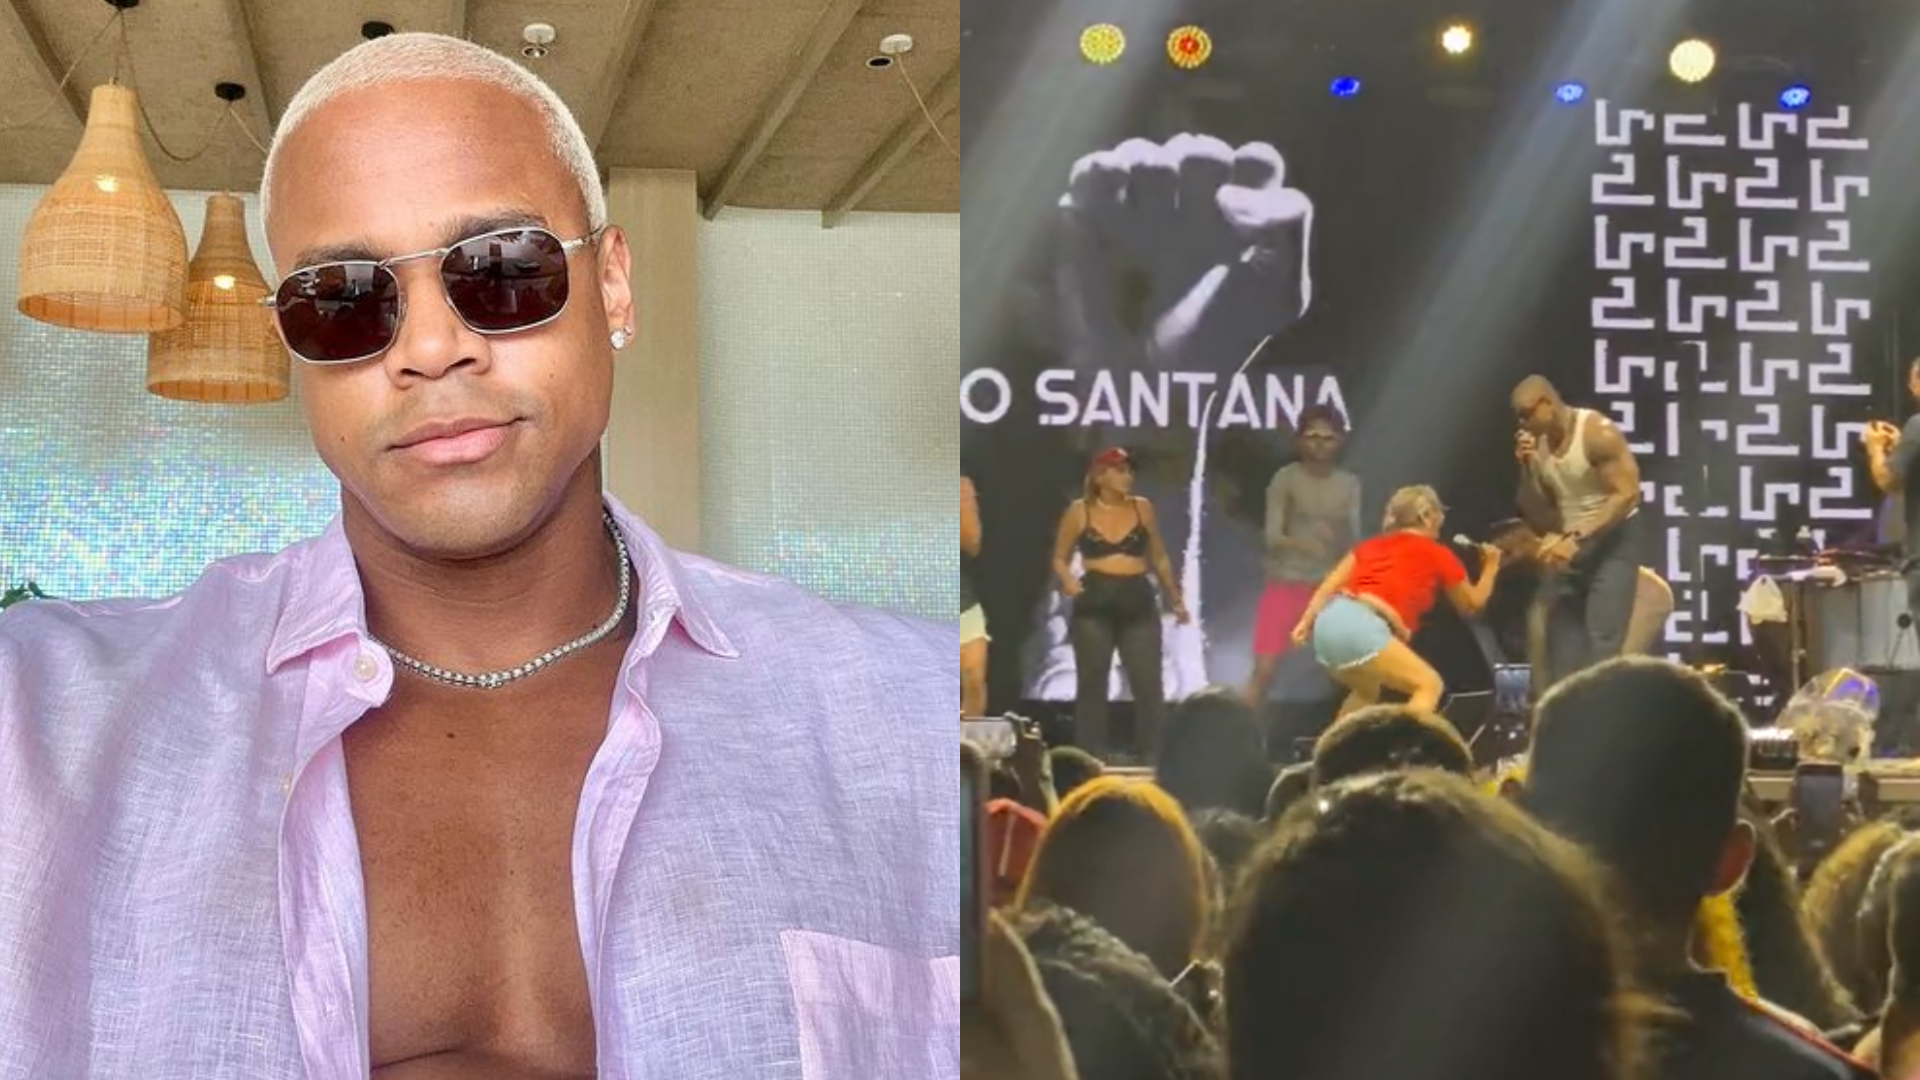 Léo Santana interrompe show após gestos sexuais de fã, e tira moça do palco Respeite minha esposa; assista imagem